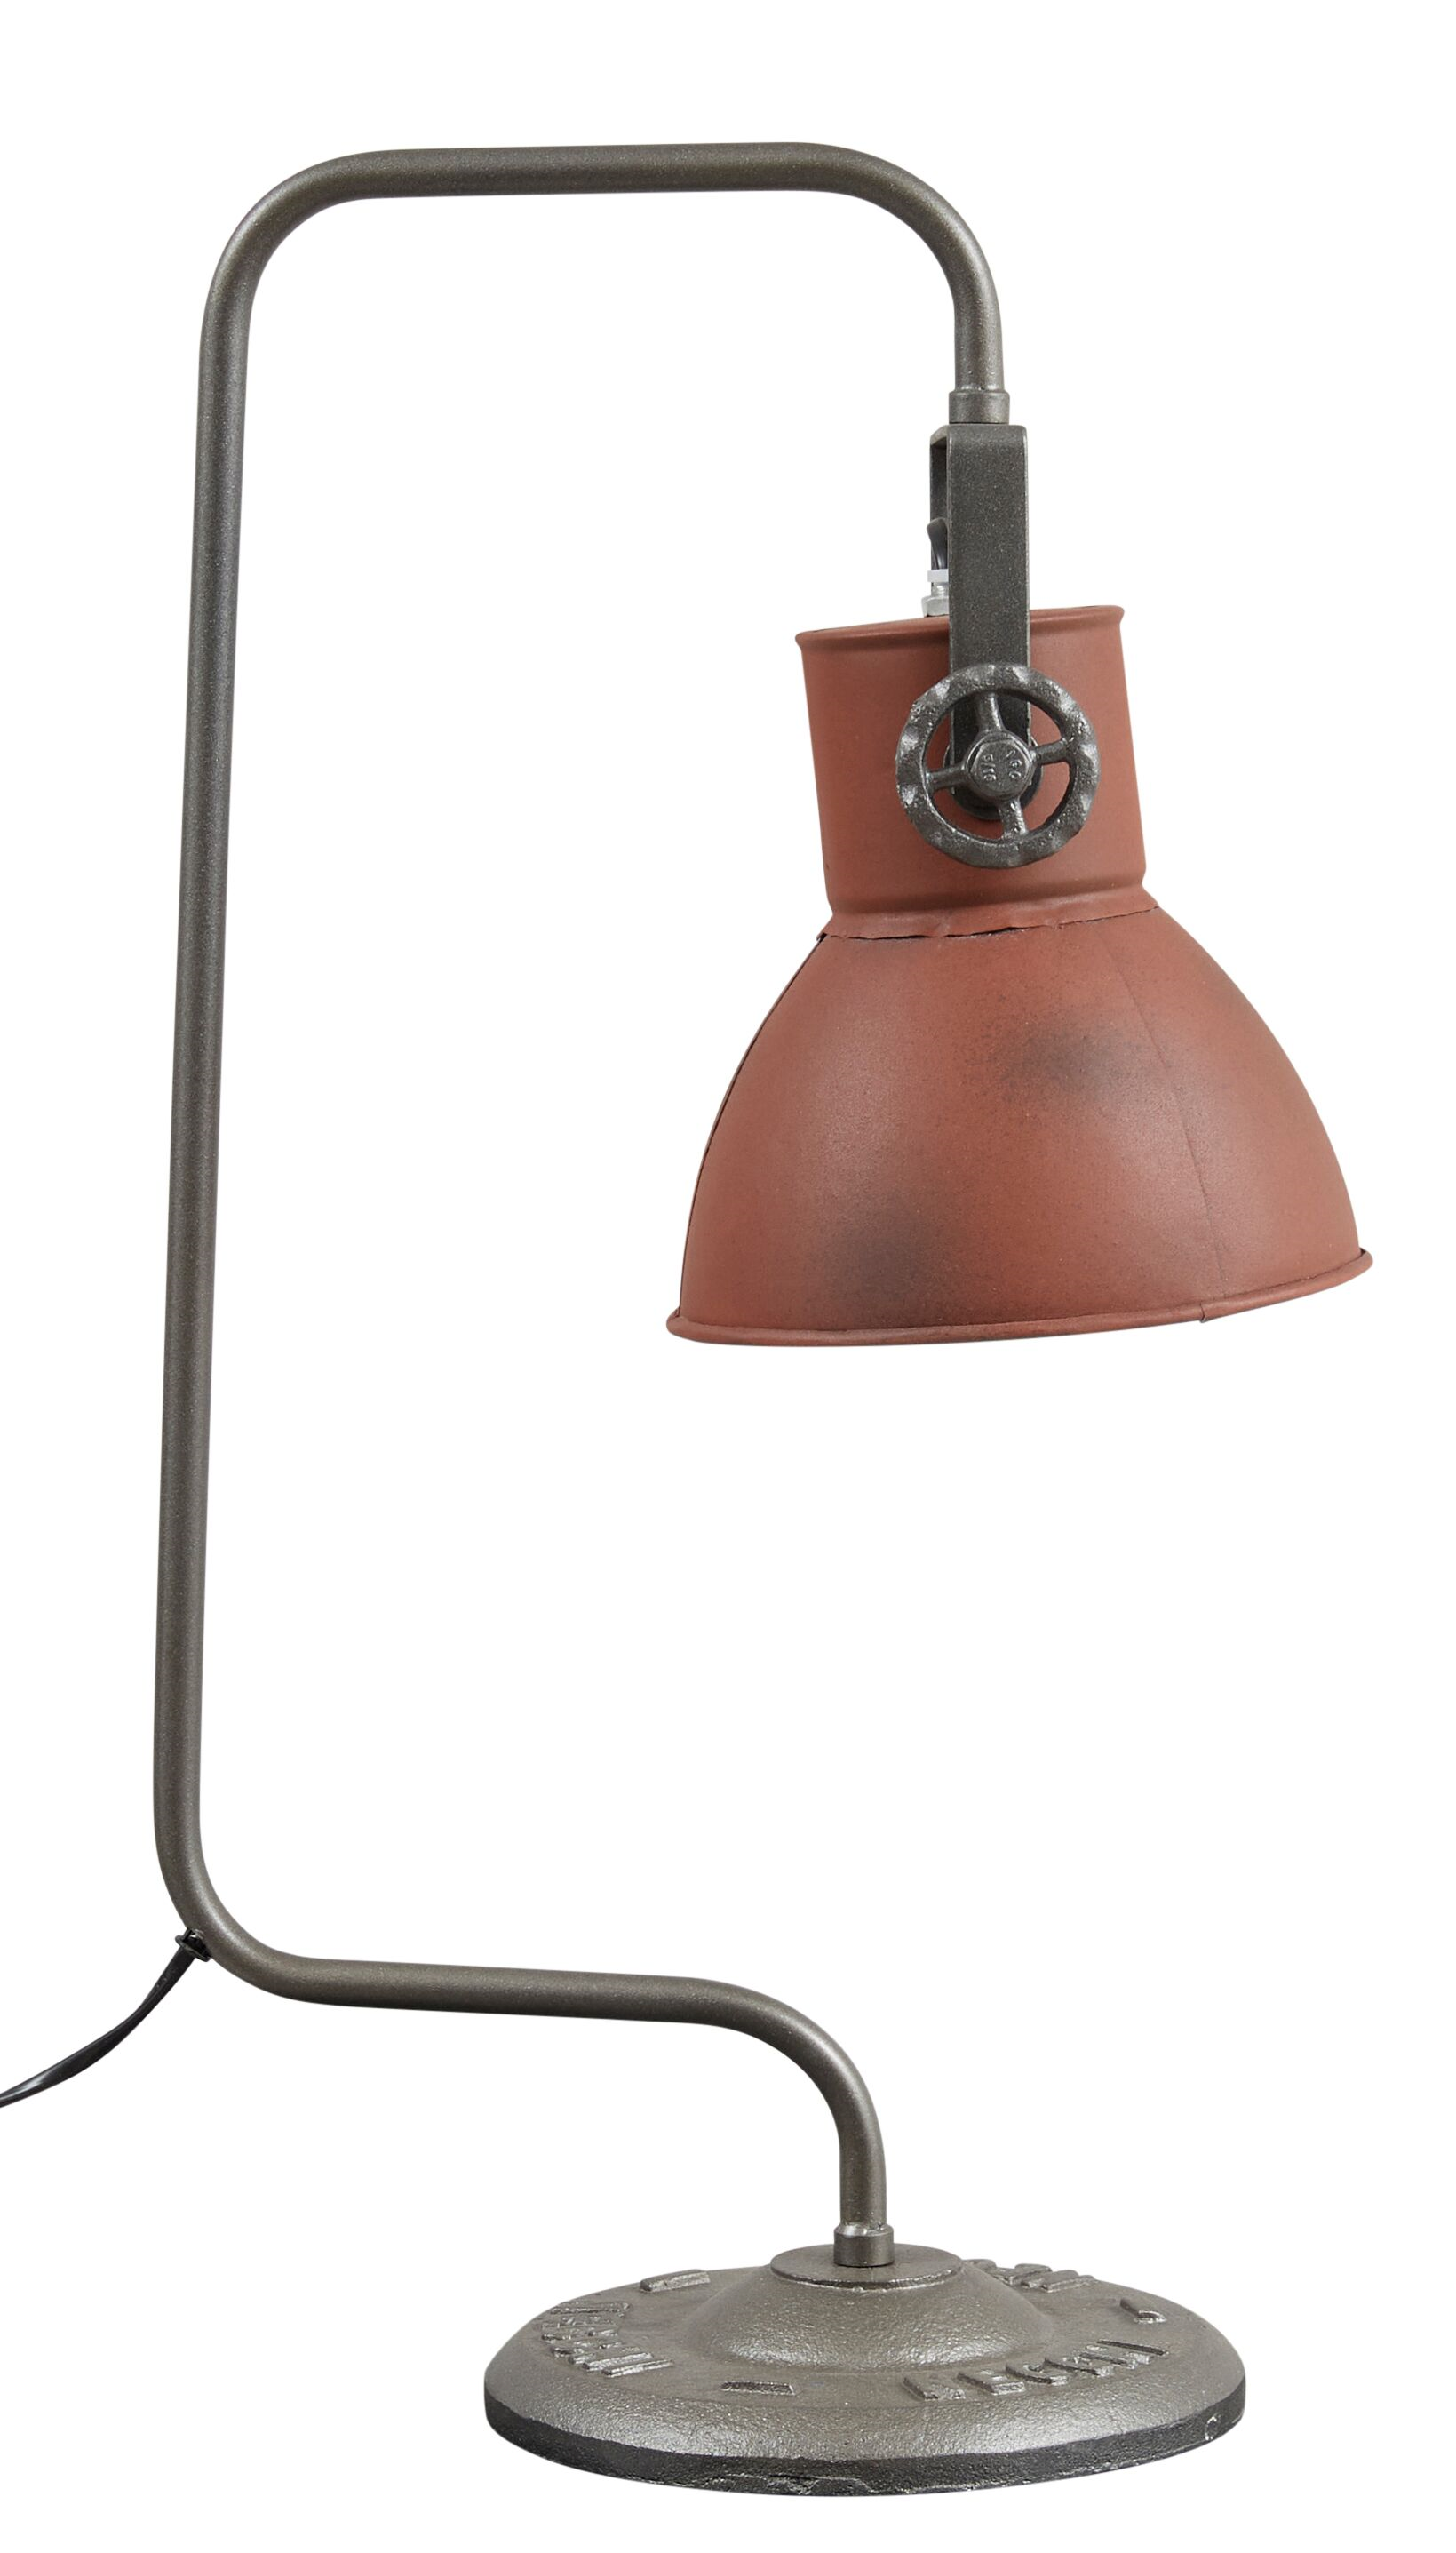 2: KILROY INDBO Lamp #20830 bordlampe - cognac læder og jern